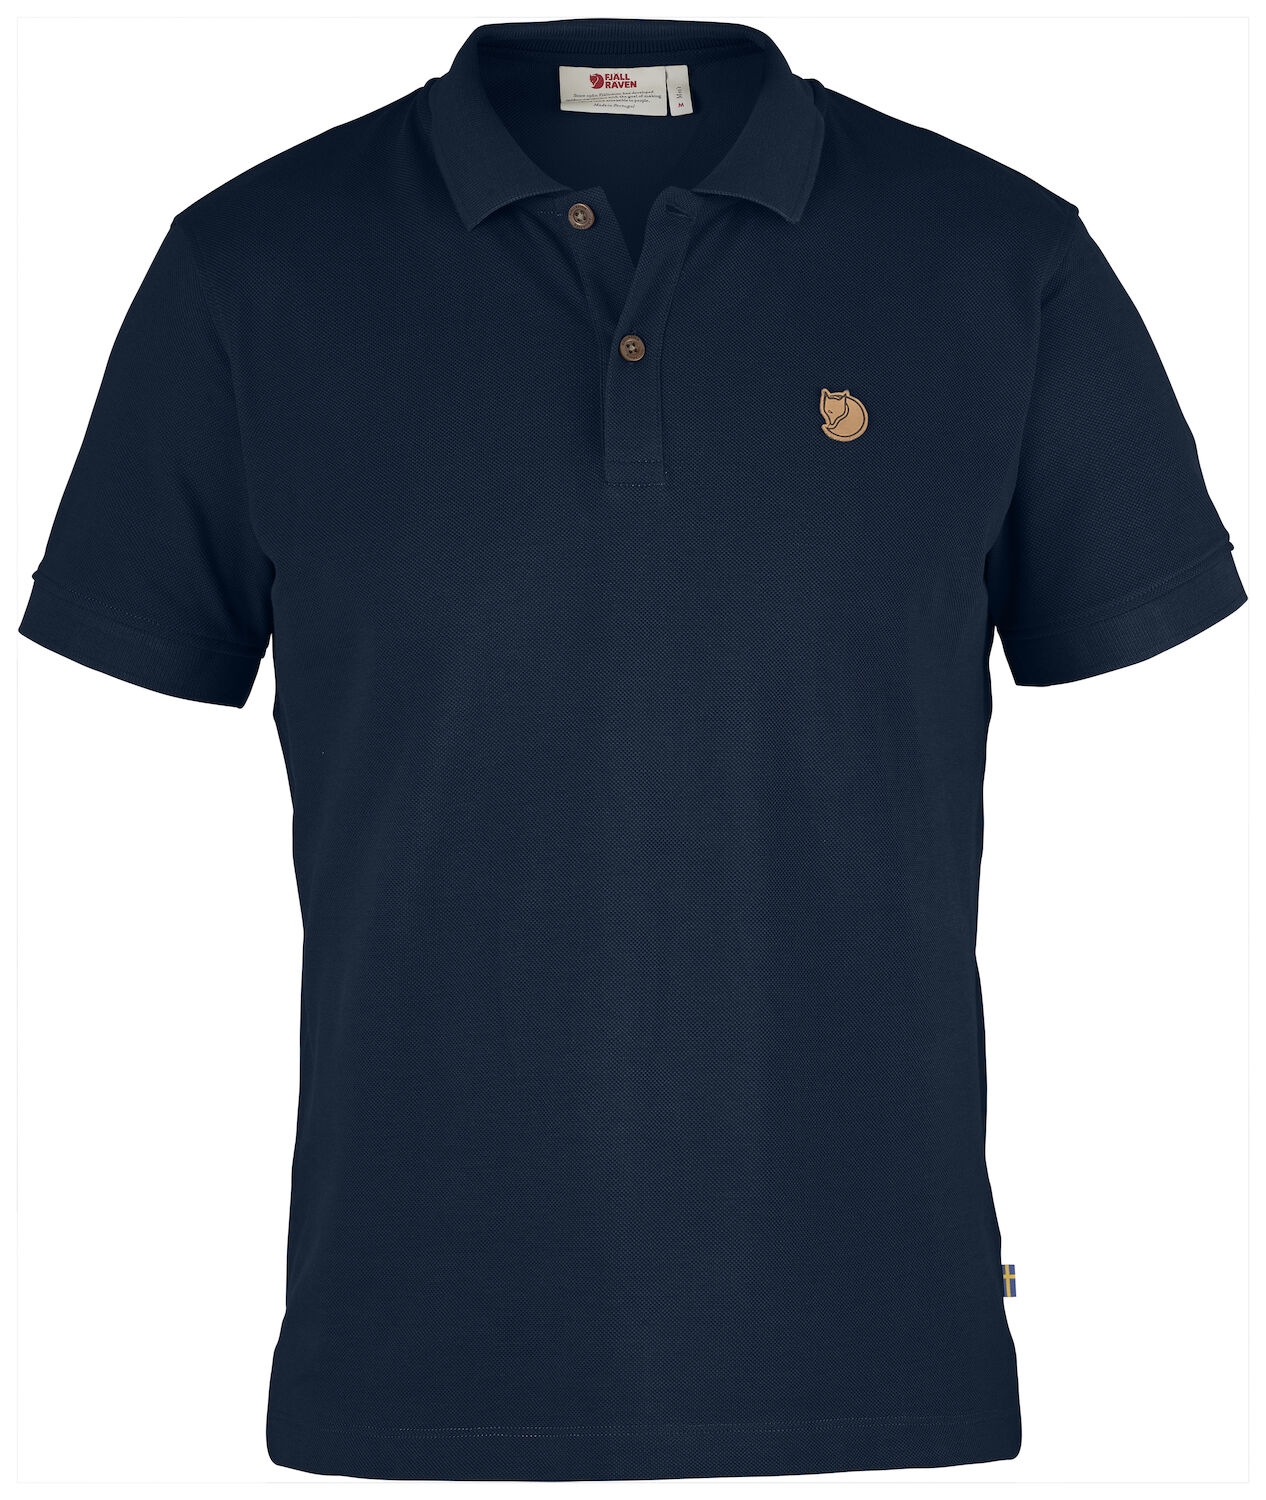 Produktbild von Fjällräven Övik Polo Shirt Herren - navy